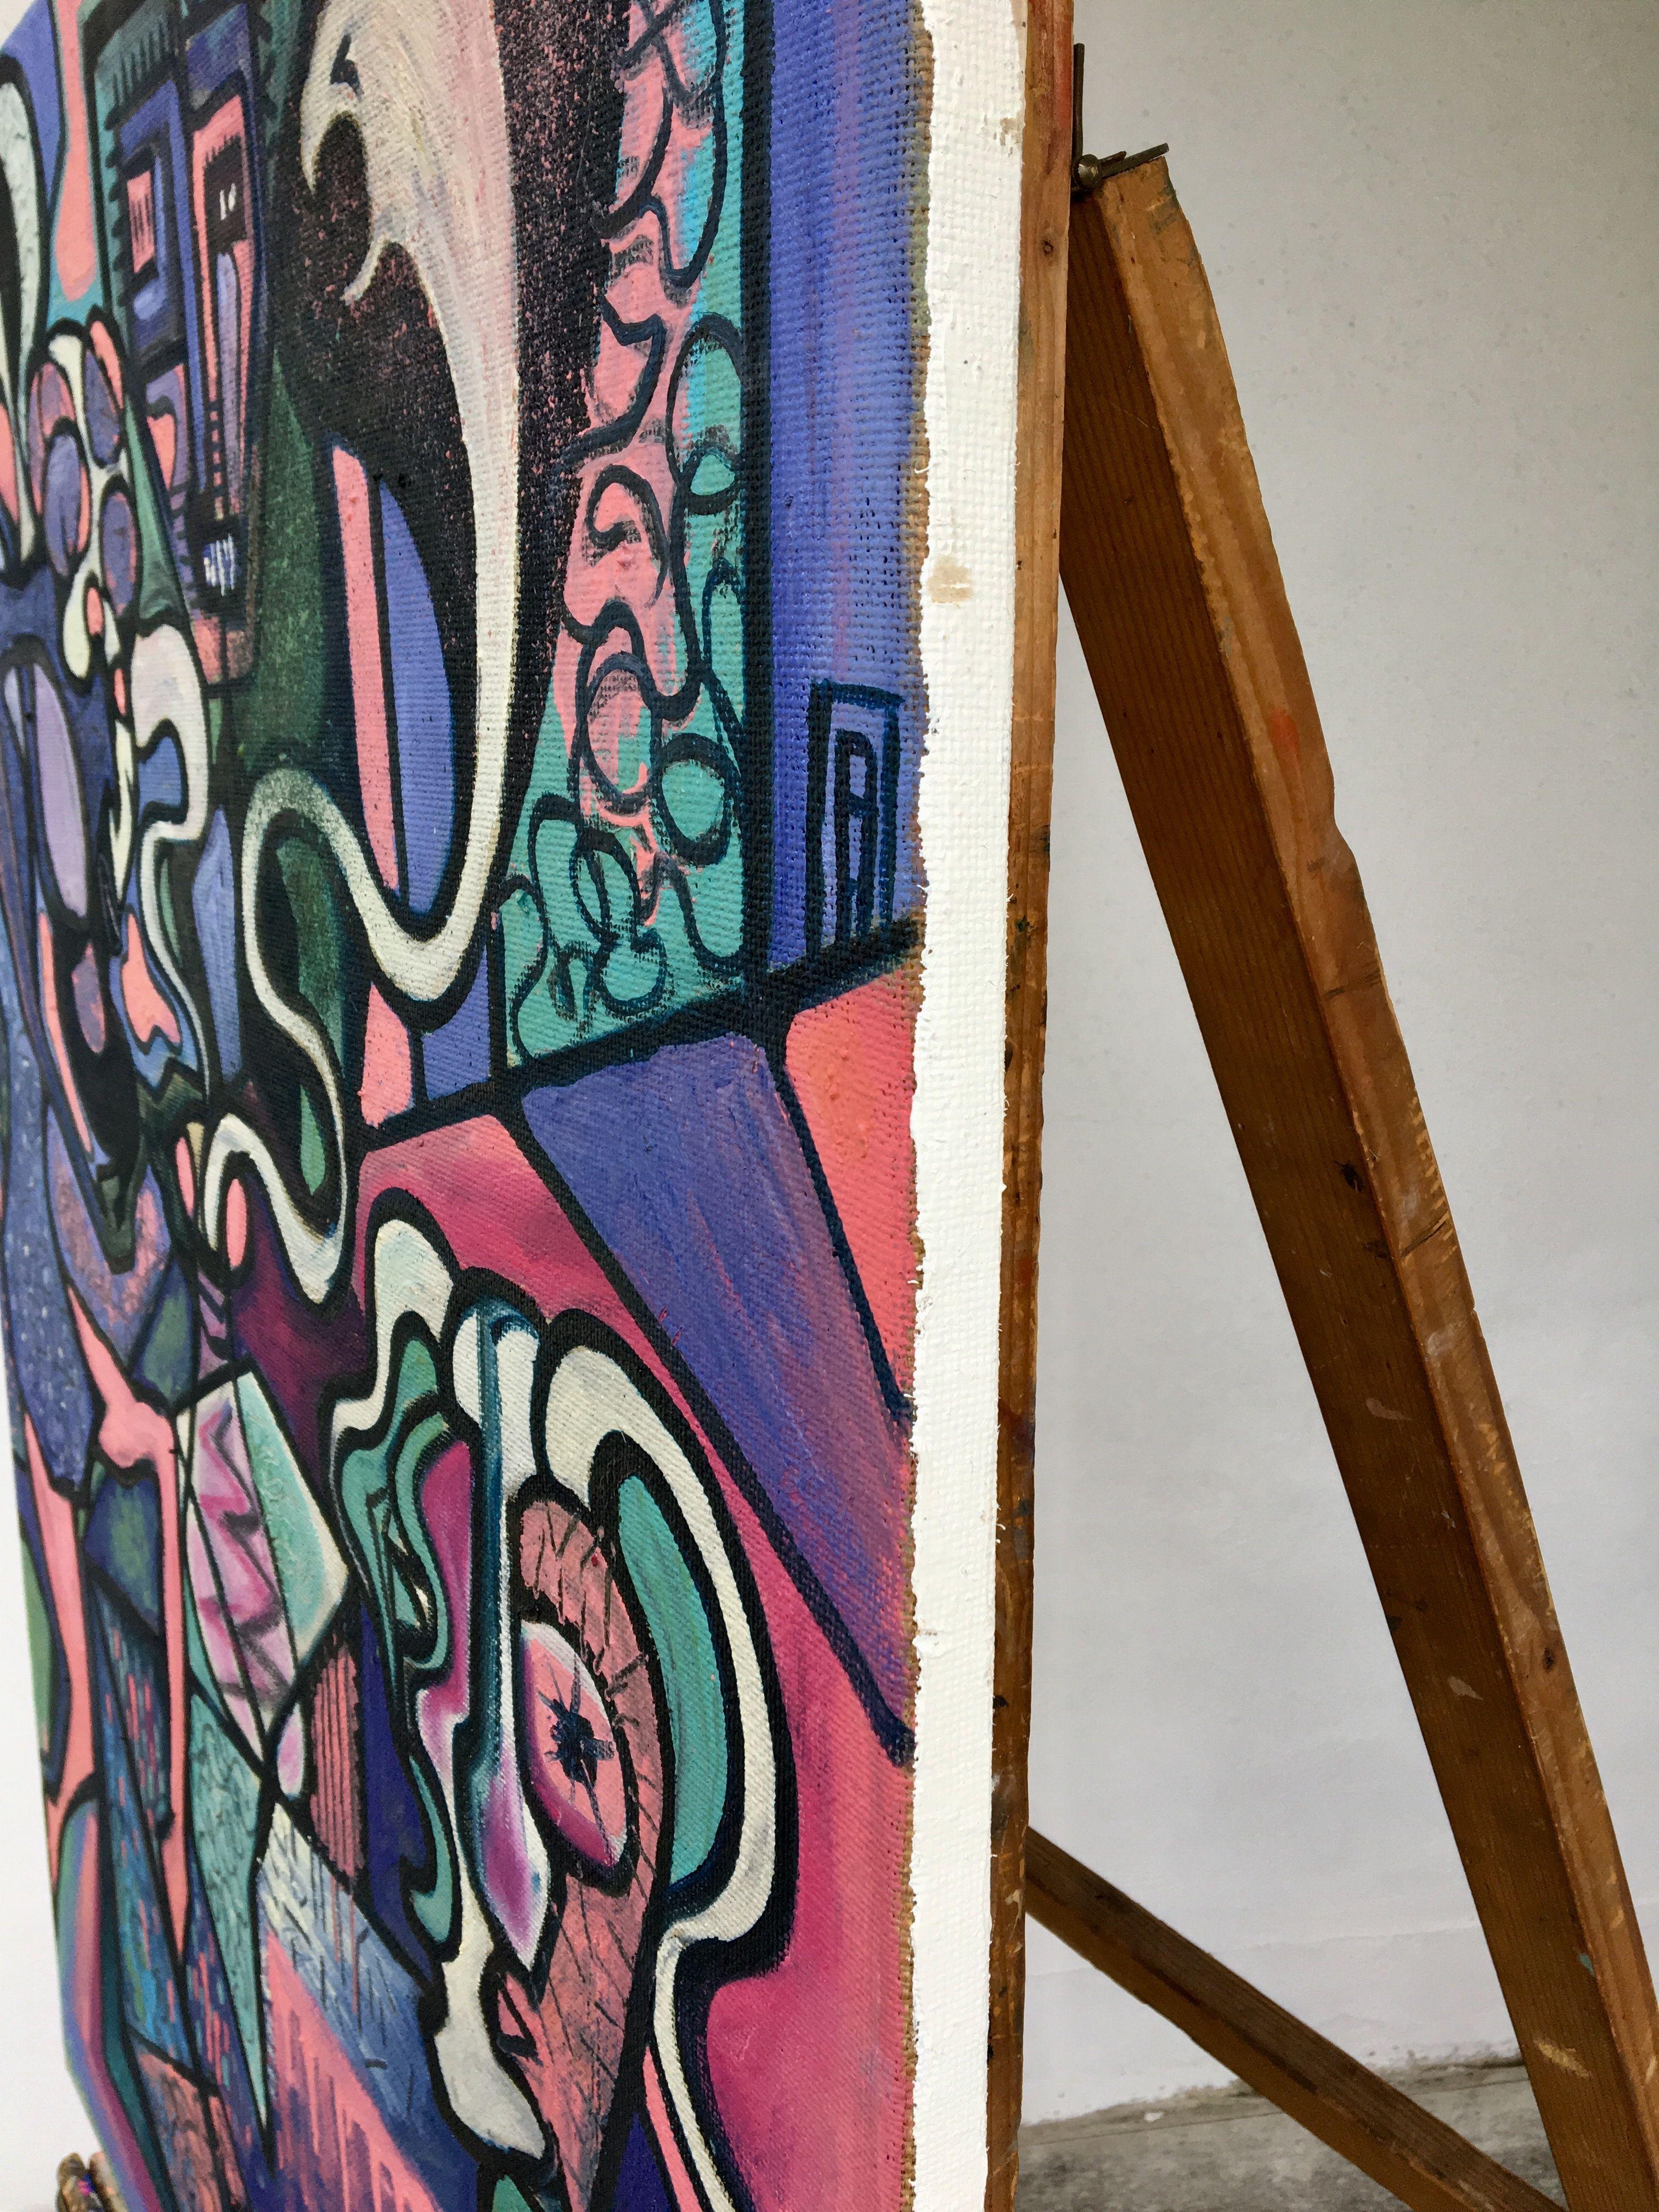 Ölfarben auf der Juta-Leinwand, stark inspiriert von Picasso und zeitgenössischen Kunstrichtungen. Gemälde, inspiriert durch den modernen antistischen Stil, das 2 verträumte Figuren im Dialog mit der Schlange in der Vase darstellt. Der Laden des